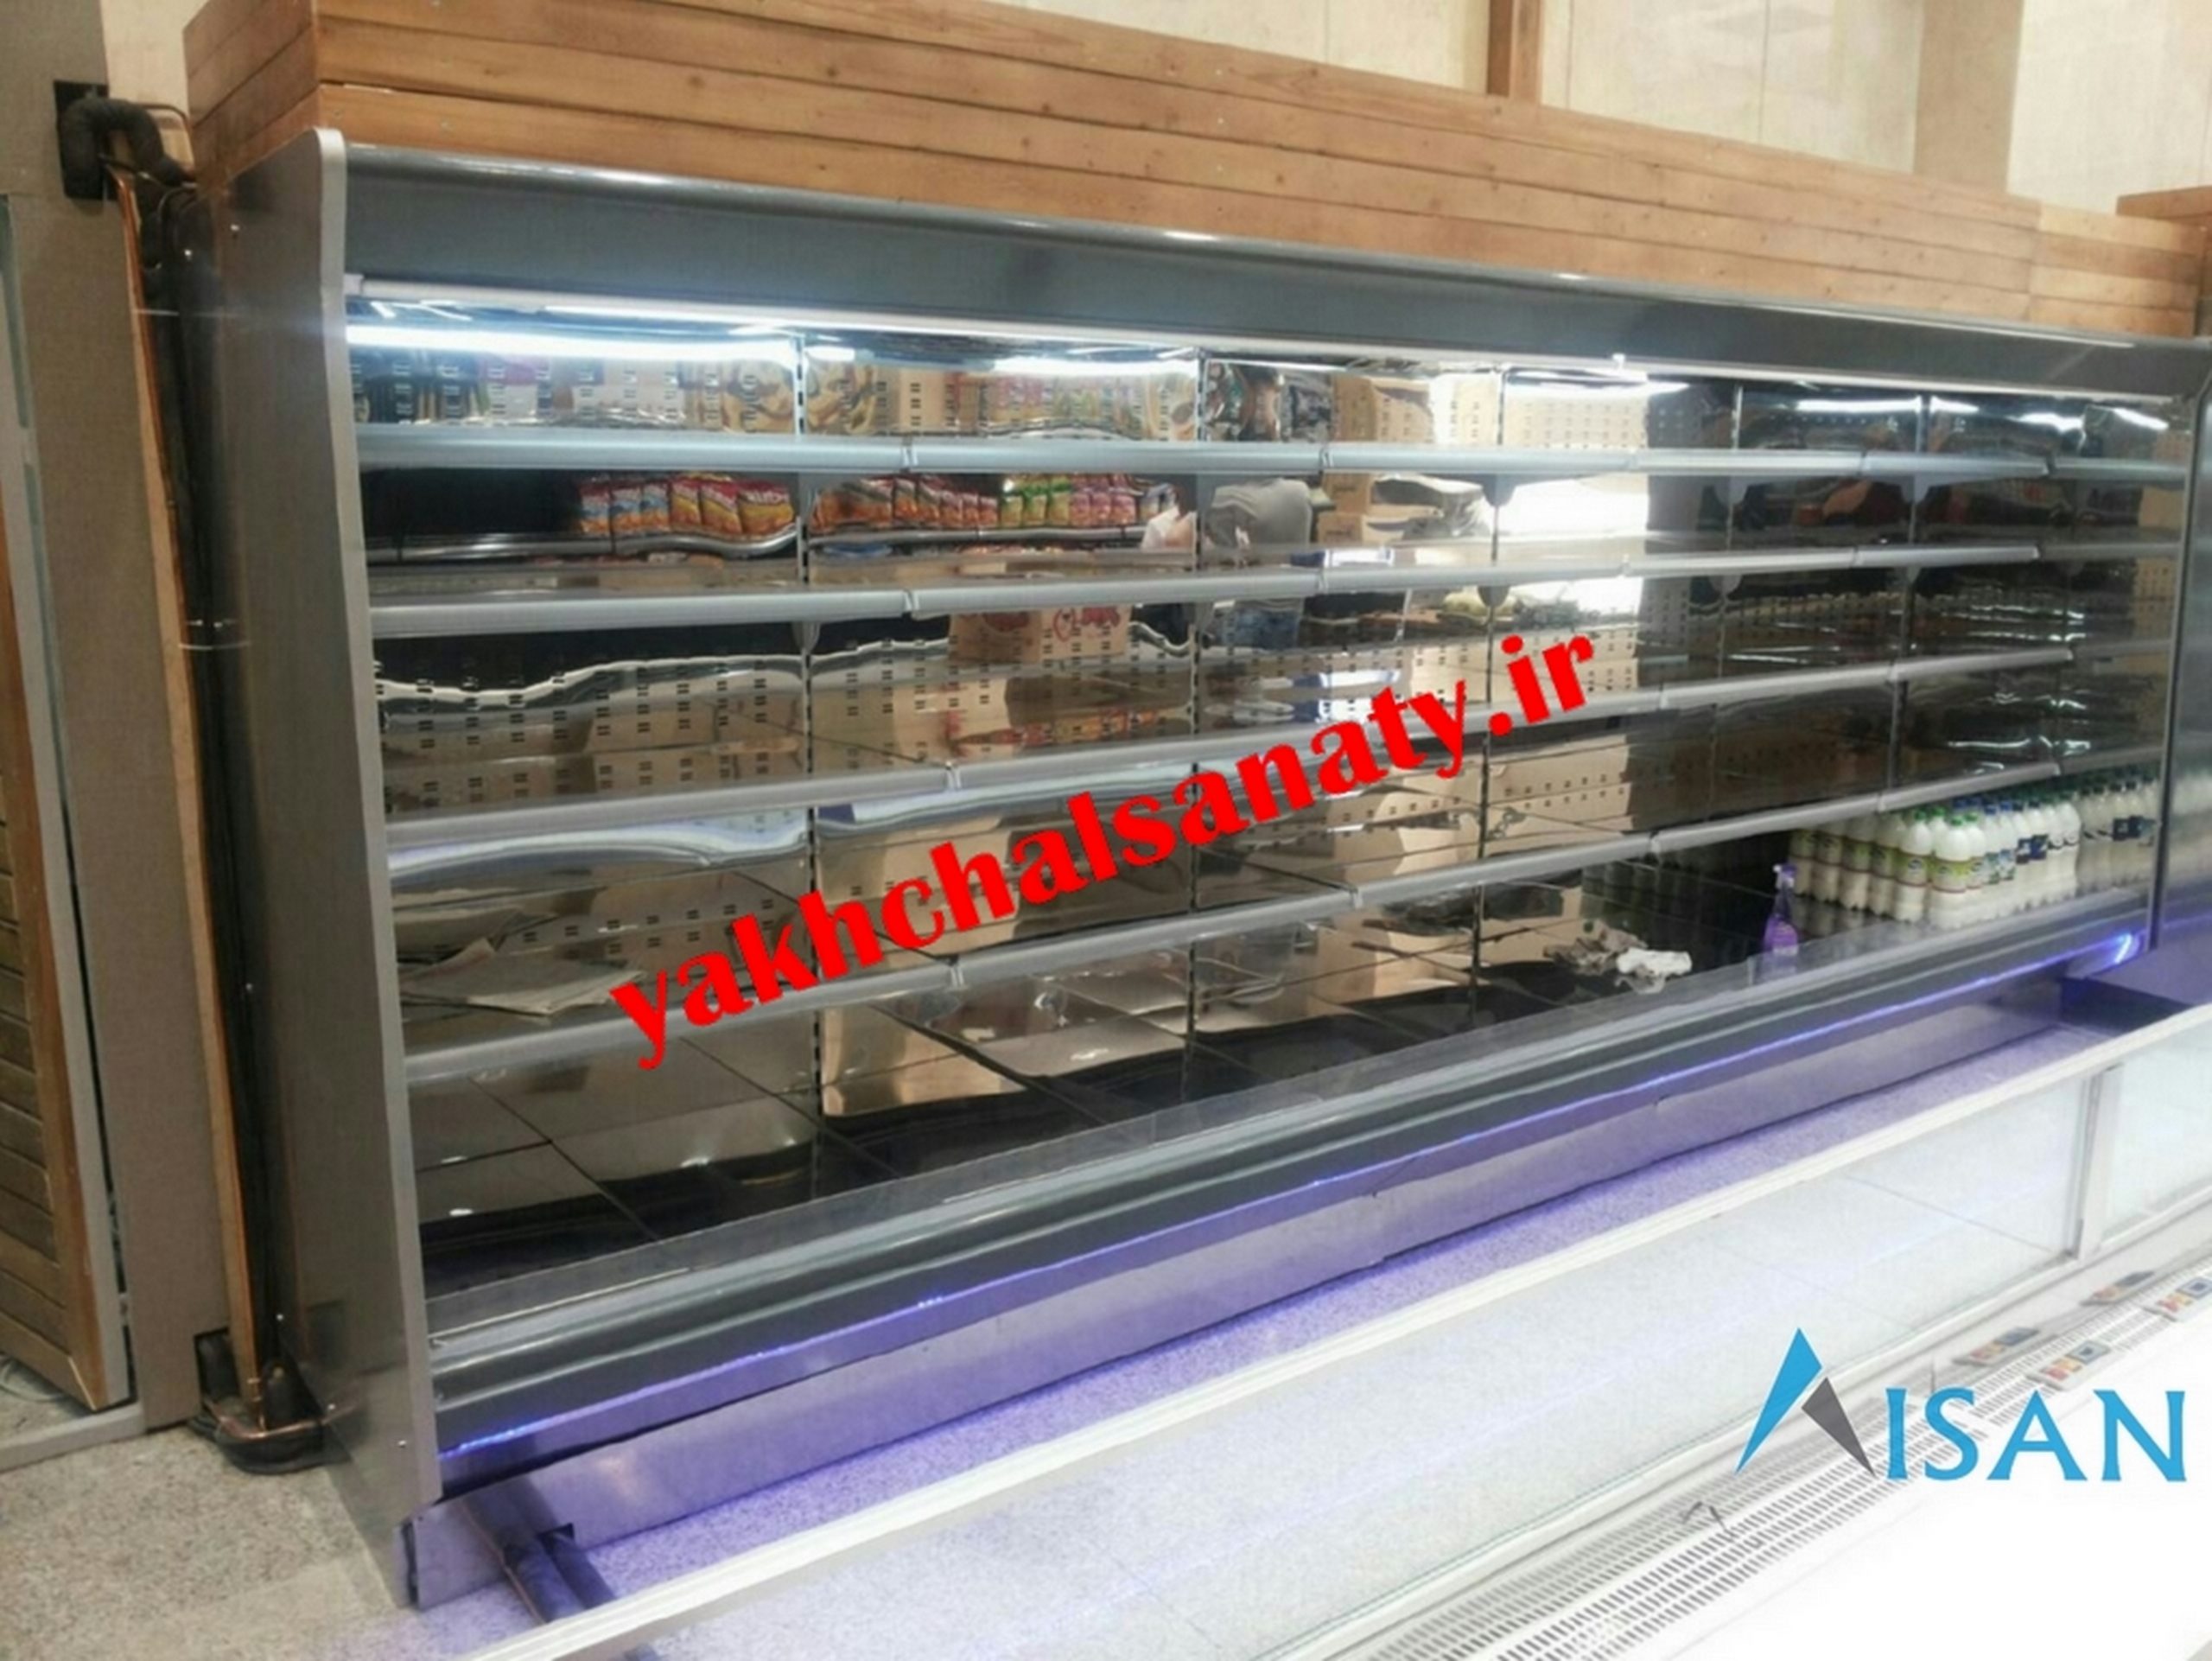 فروش انواع یخچال فروشگاهی با کیفیت در بوشهر